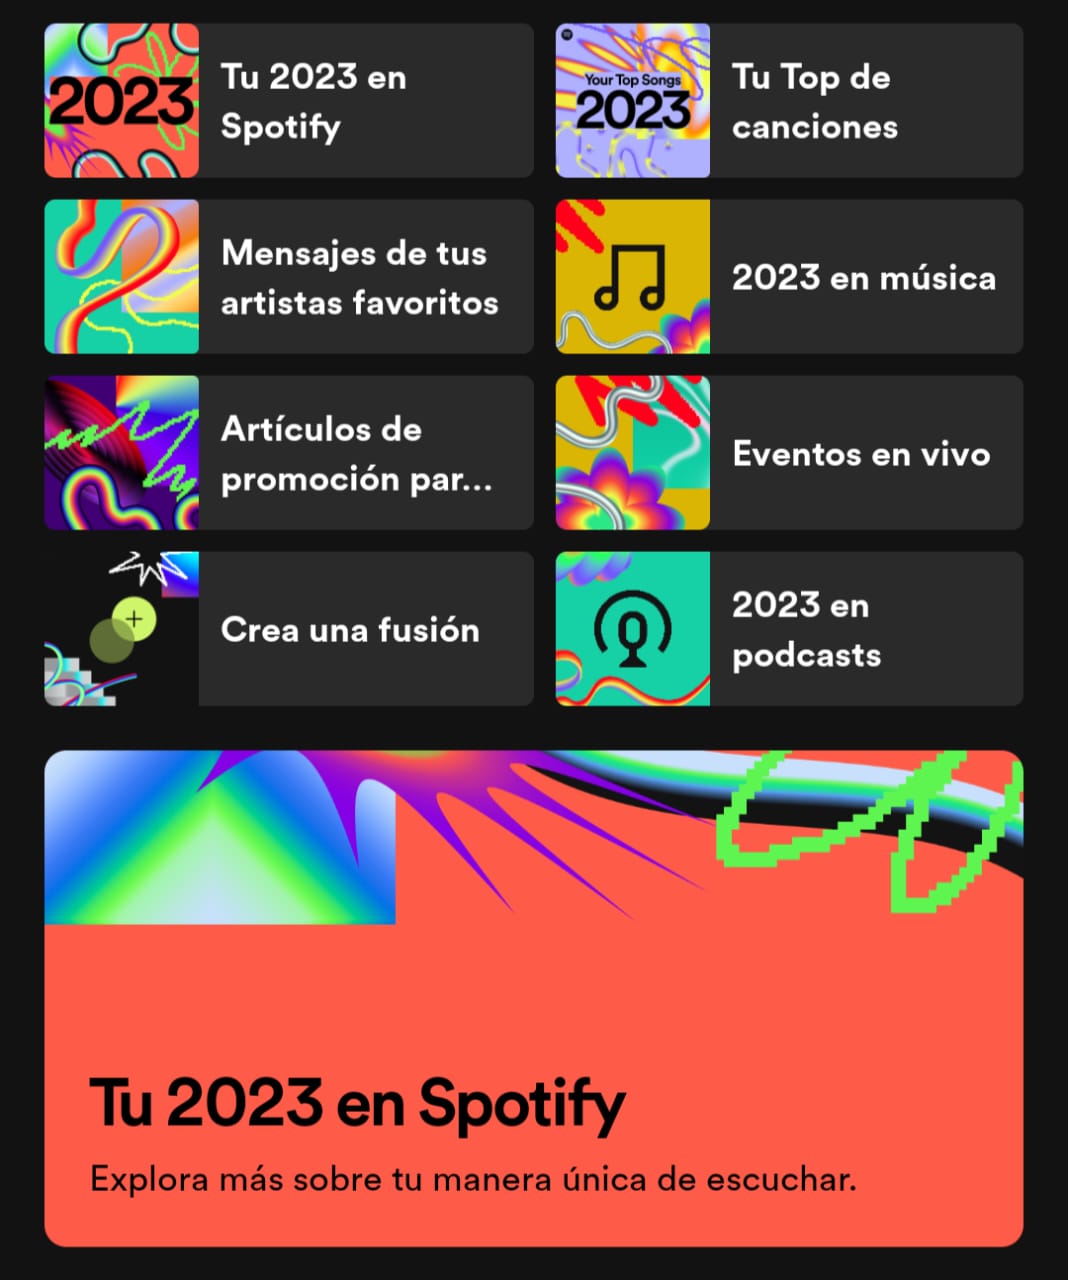 Spotify Wrapped 2023 en la app